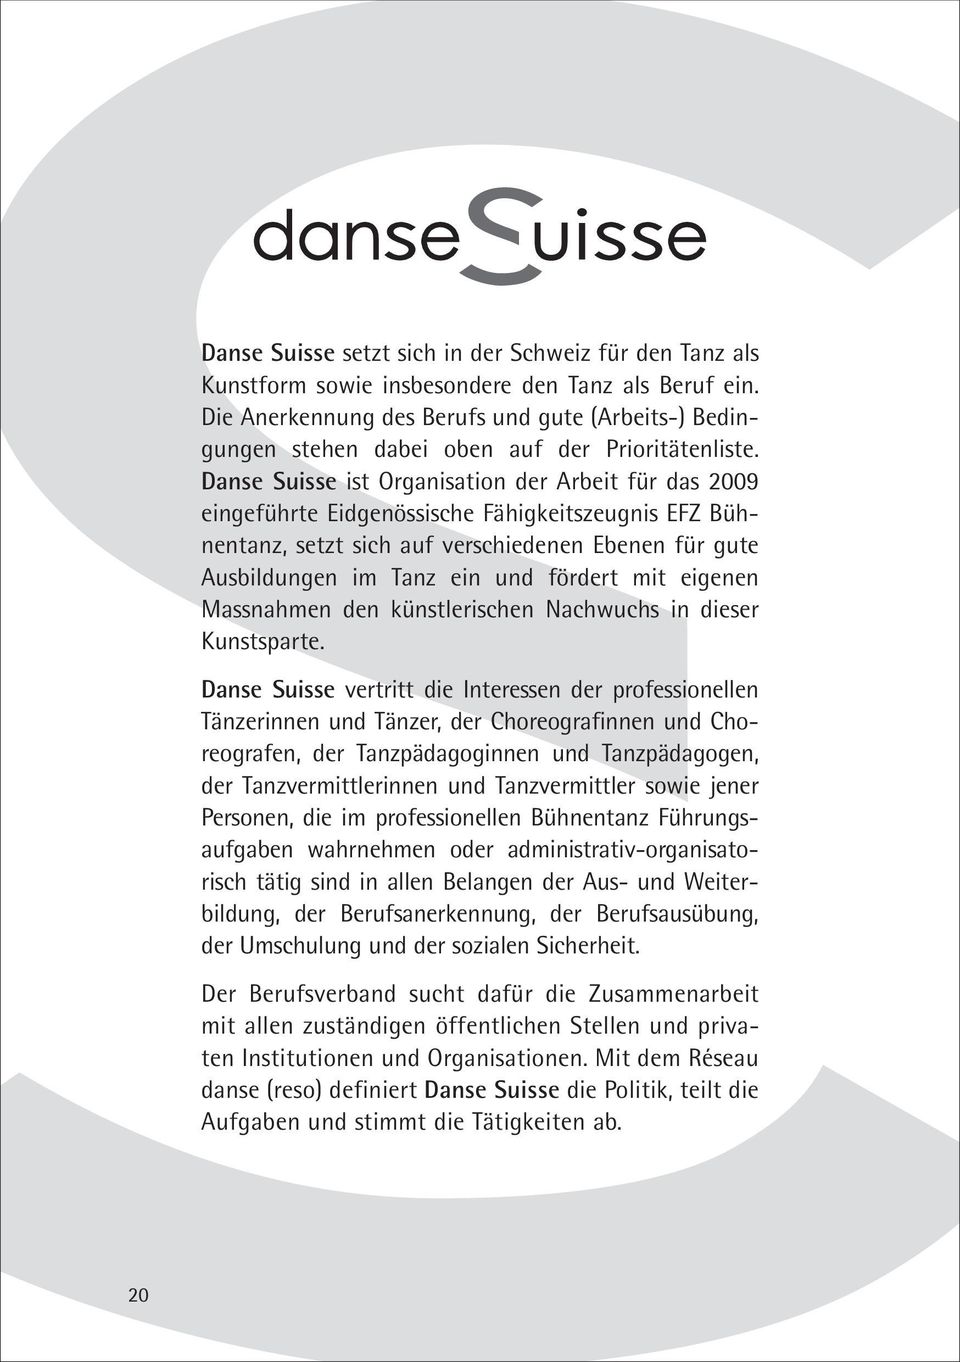 Danse Suisse ist Organisation der Arbeit für das 2009 eingeführte Eidgenössische Fähigkeitszeugnis EFZ Bühnentanz, setzt sich auf verschiedenen Ebenen für gute Ausbildungen im Tanz ein und fördert